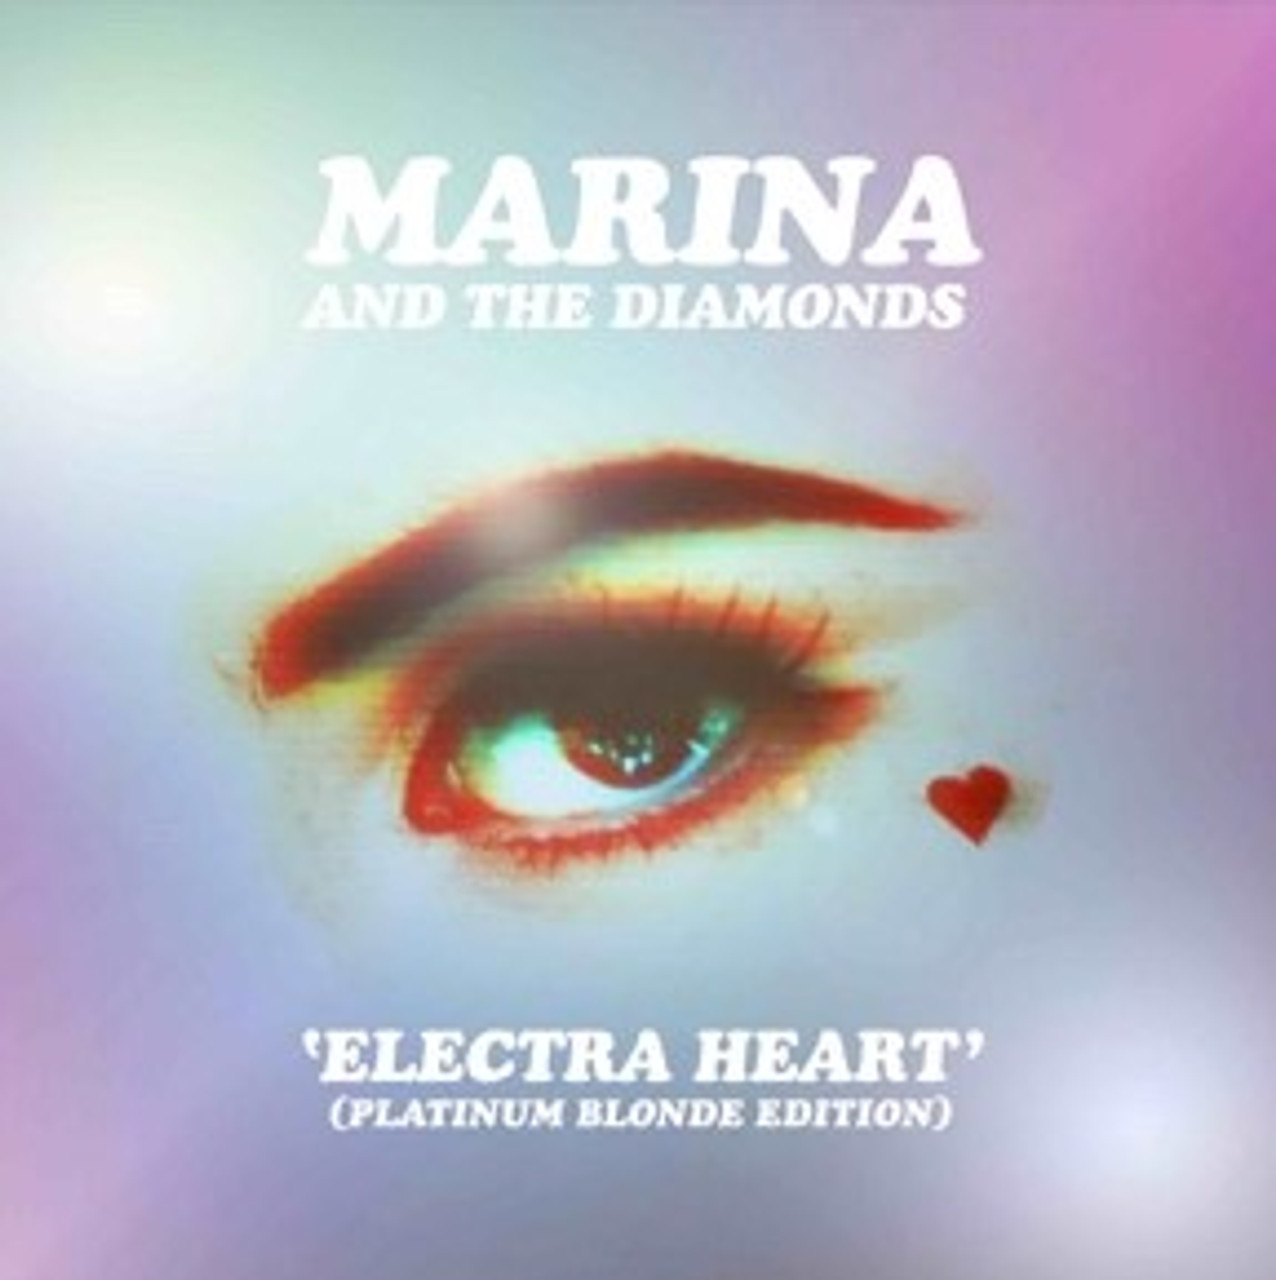 marina and the diamonds stencil